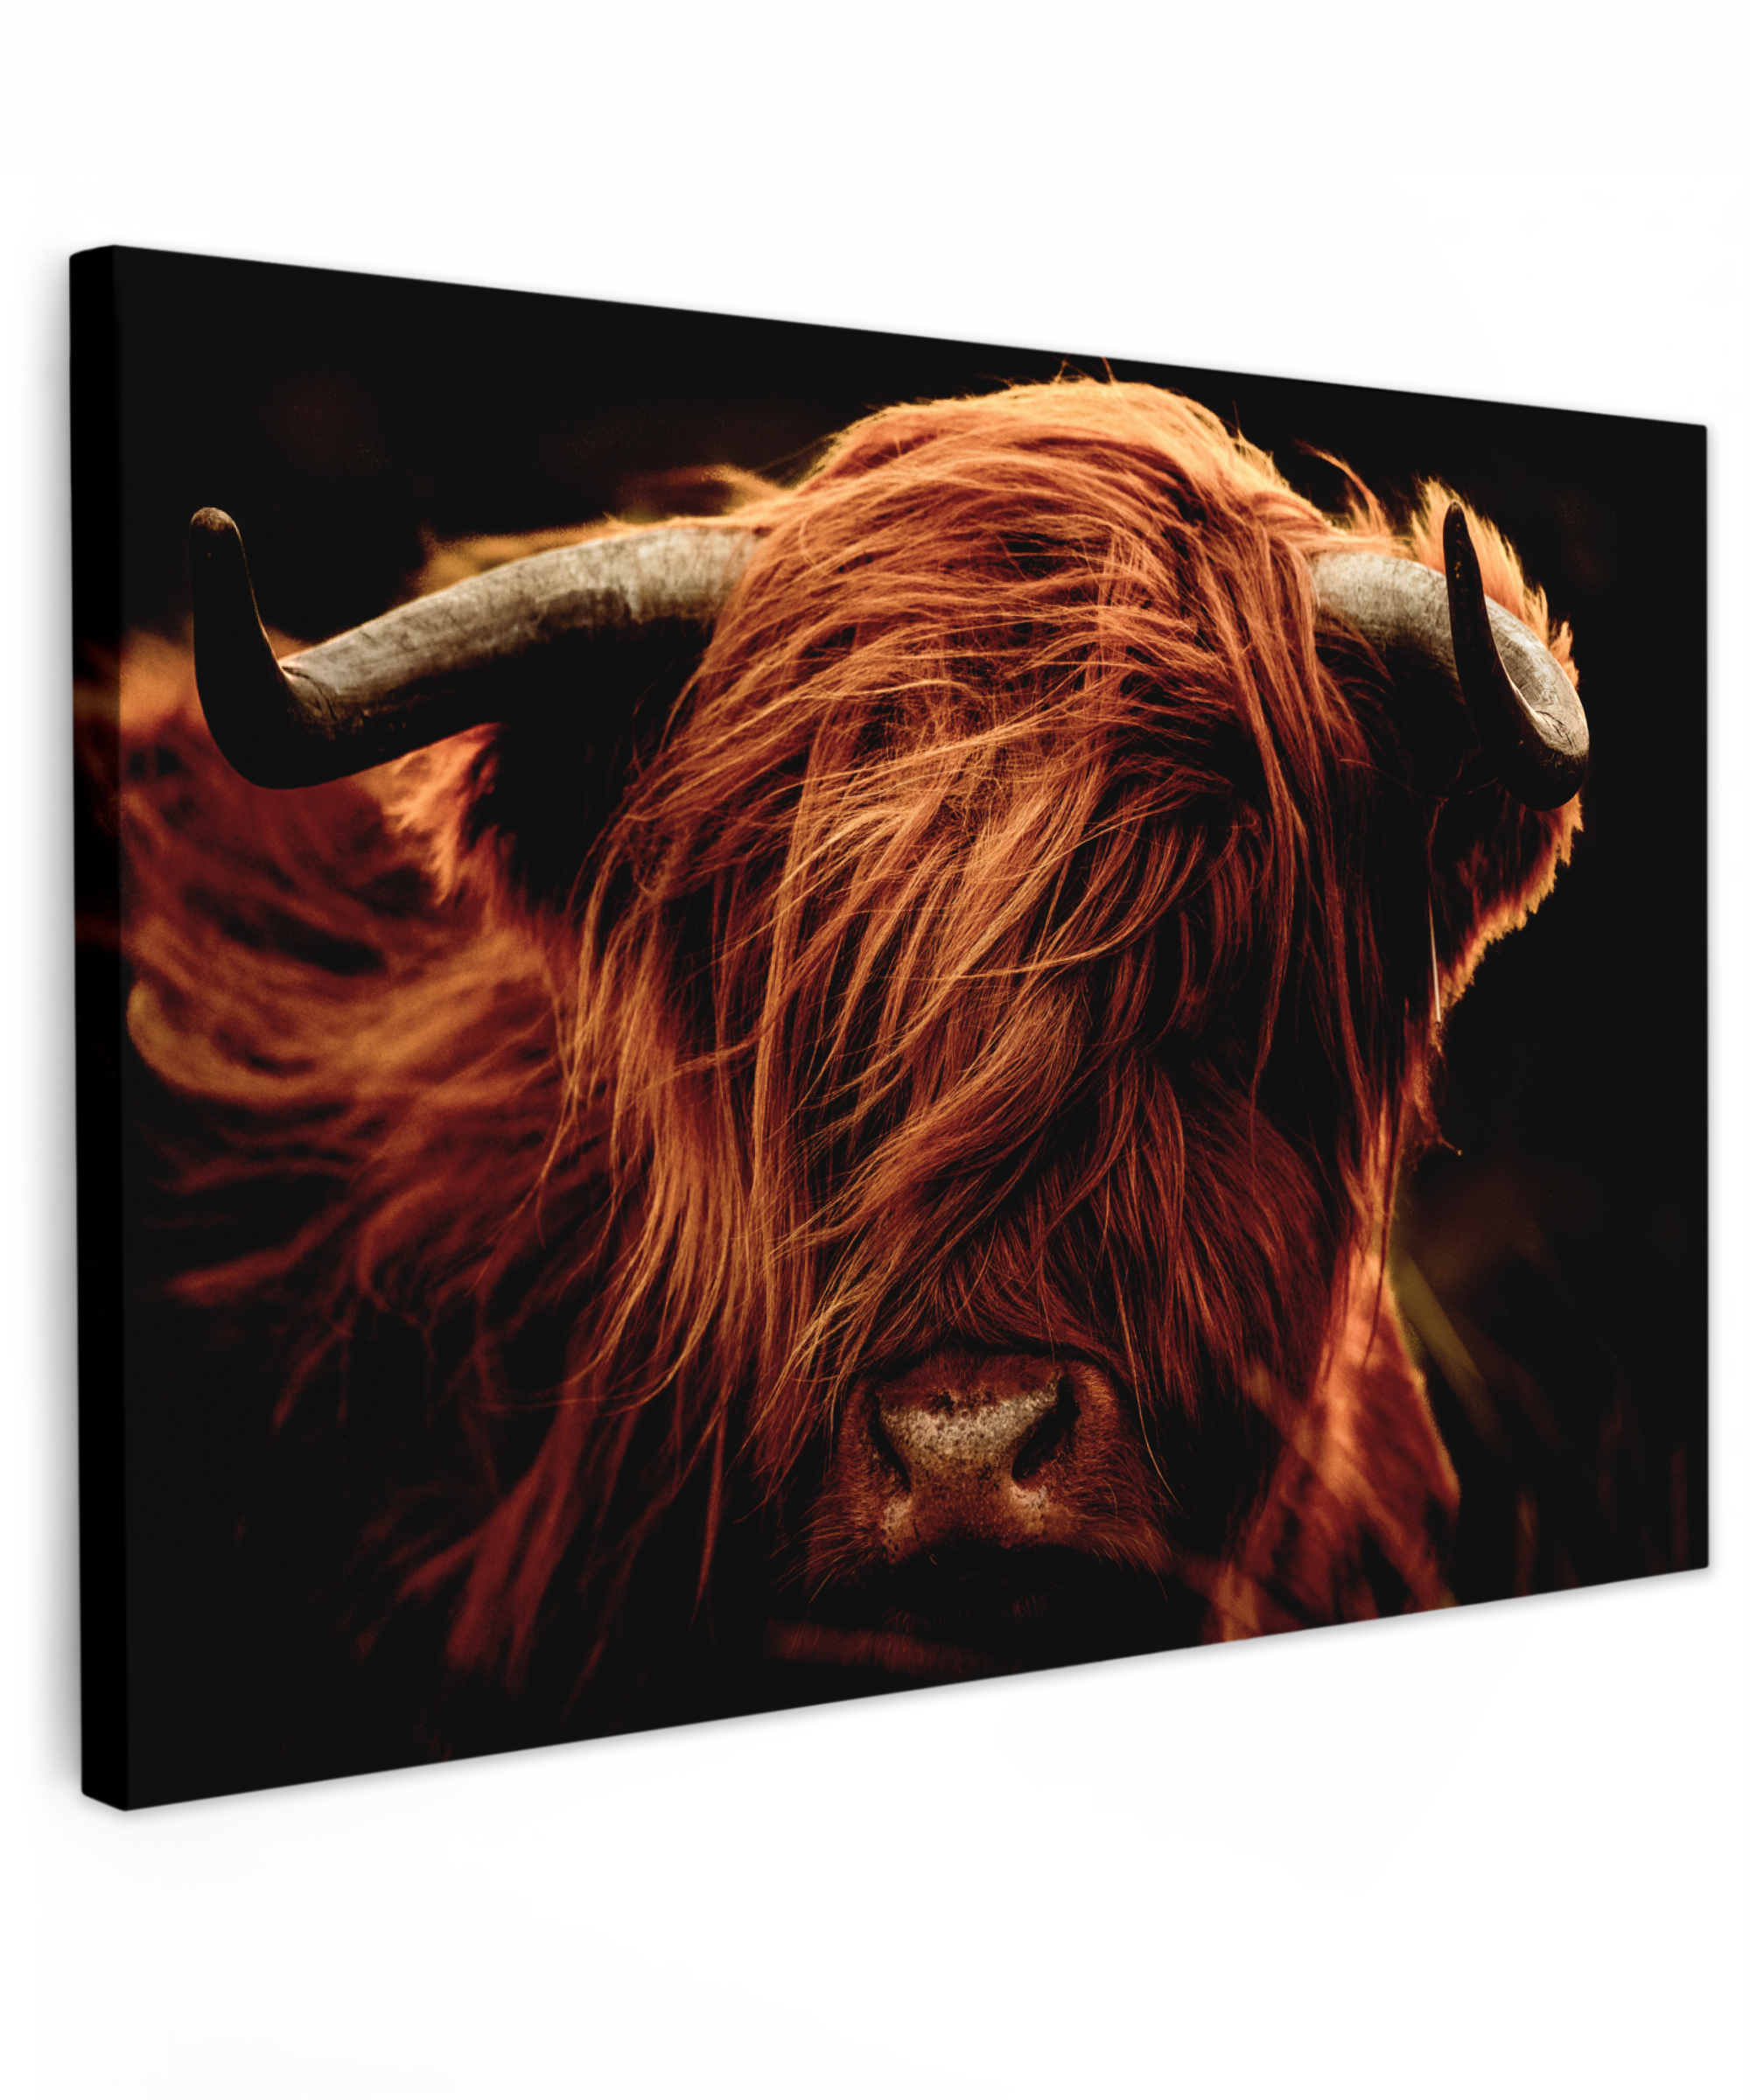 Canvas schilderij - Schotse hooglander - Koeienkop - hoorns - Portret - Dieren